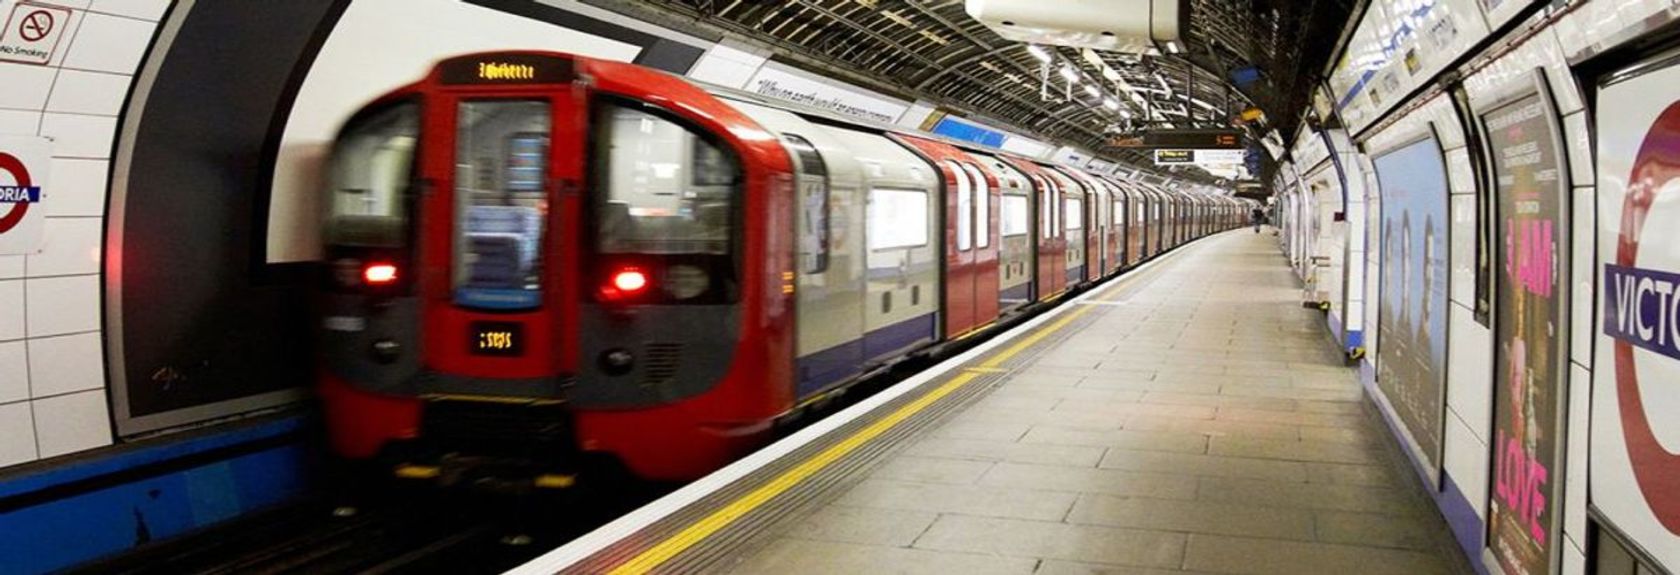 A maneira mais rápida de contornar Londres é de metrô. Especialmente com as distâncias mais longas, não há melhor meio de transporte do que o metrô de Londres para cobrir grandes distâncias nesta imensa cidade do Tamisa.